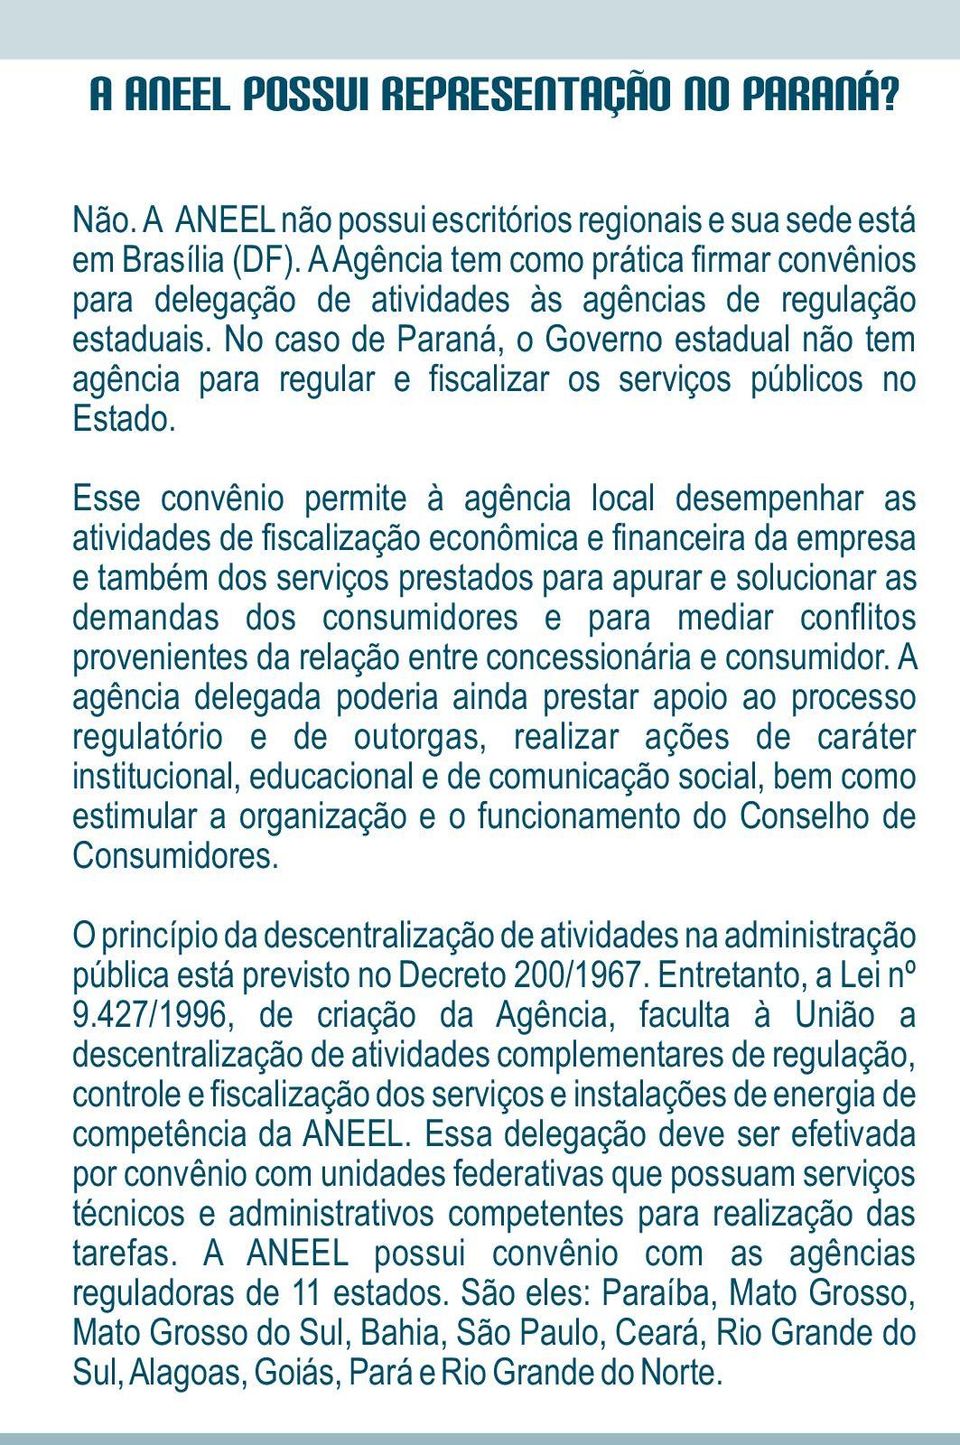 No caso de Paraná, o Governo estadual não tem agência para regular e fiscalizar os serviços públicos no Estado.